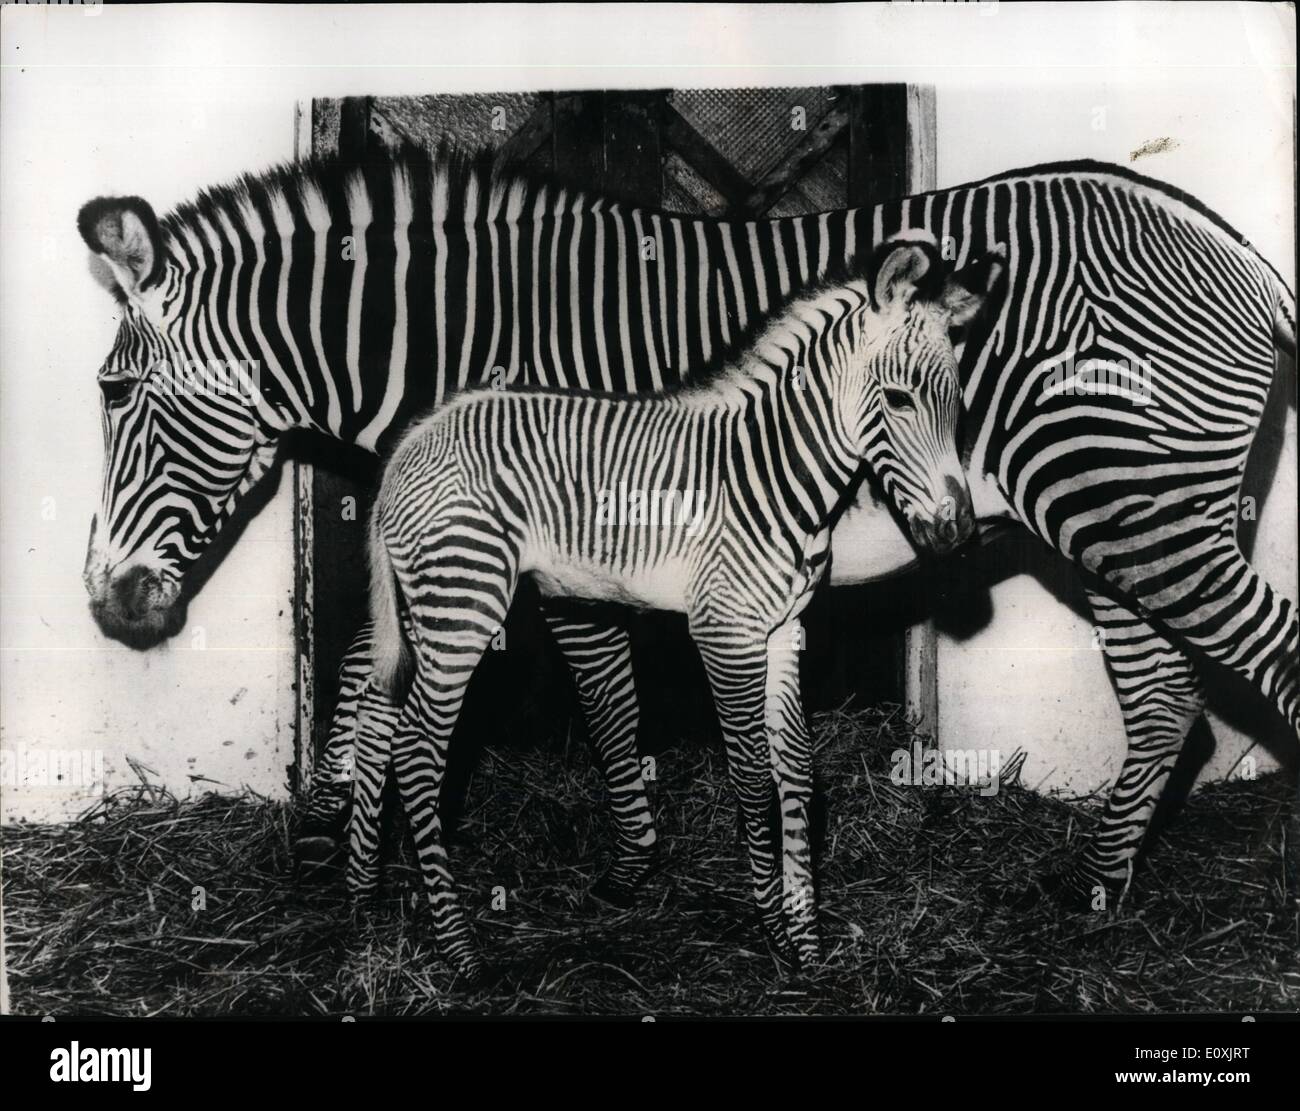 Febbraio 02, 1967 - Si tratta di un ragazzo - di nuovo: nonostante la gioia comune sentita la scorsa settimana presso lo Zoo di Francoforte la seguente la nascita di un asino-zebra, vi è stata una leggera sensazione di delusione. Durante gli ultimi dieci anni, otto asino-zebre sono nati allo zoo, e sette di loro erano di sesso maschile, e si spera che questa volta sarebbe una femmina - ma ancora una volta si è rivelato essere un maschio. L'asino - zebre appartengono alle spiagge più belle e-designer animali delle loro gare e vivere nelle Highlands di Abissinia. Foto Stock